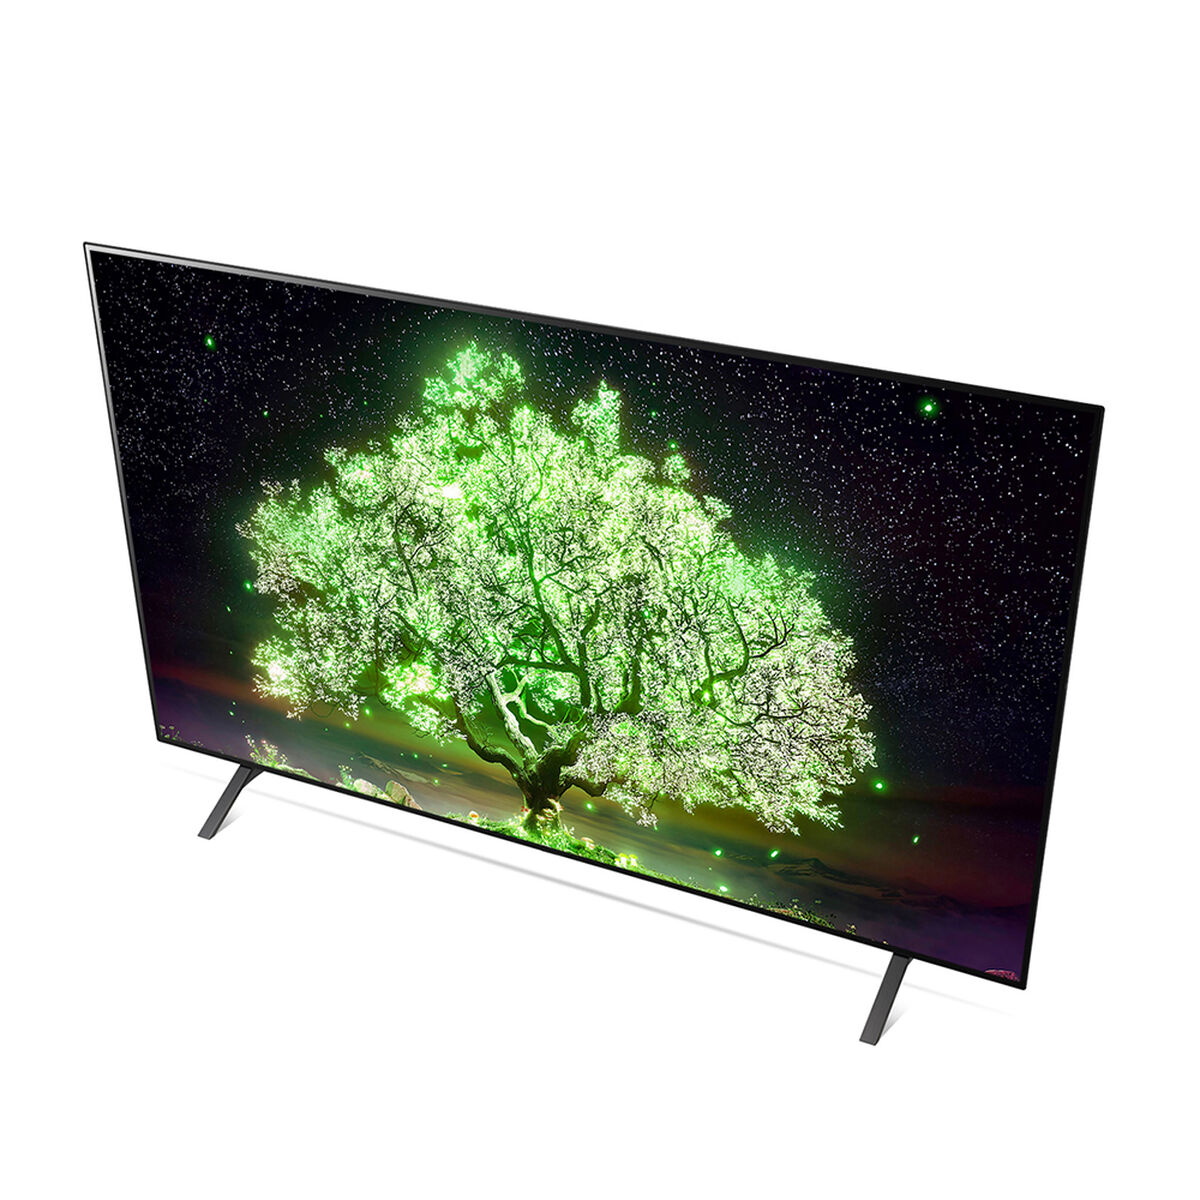 OLED 55" LG OLED55A1PSA Smart TV 4K Ultra HD